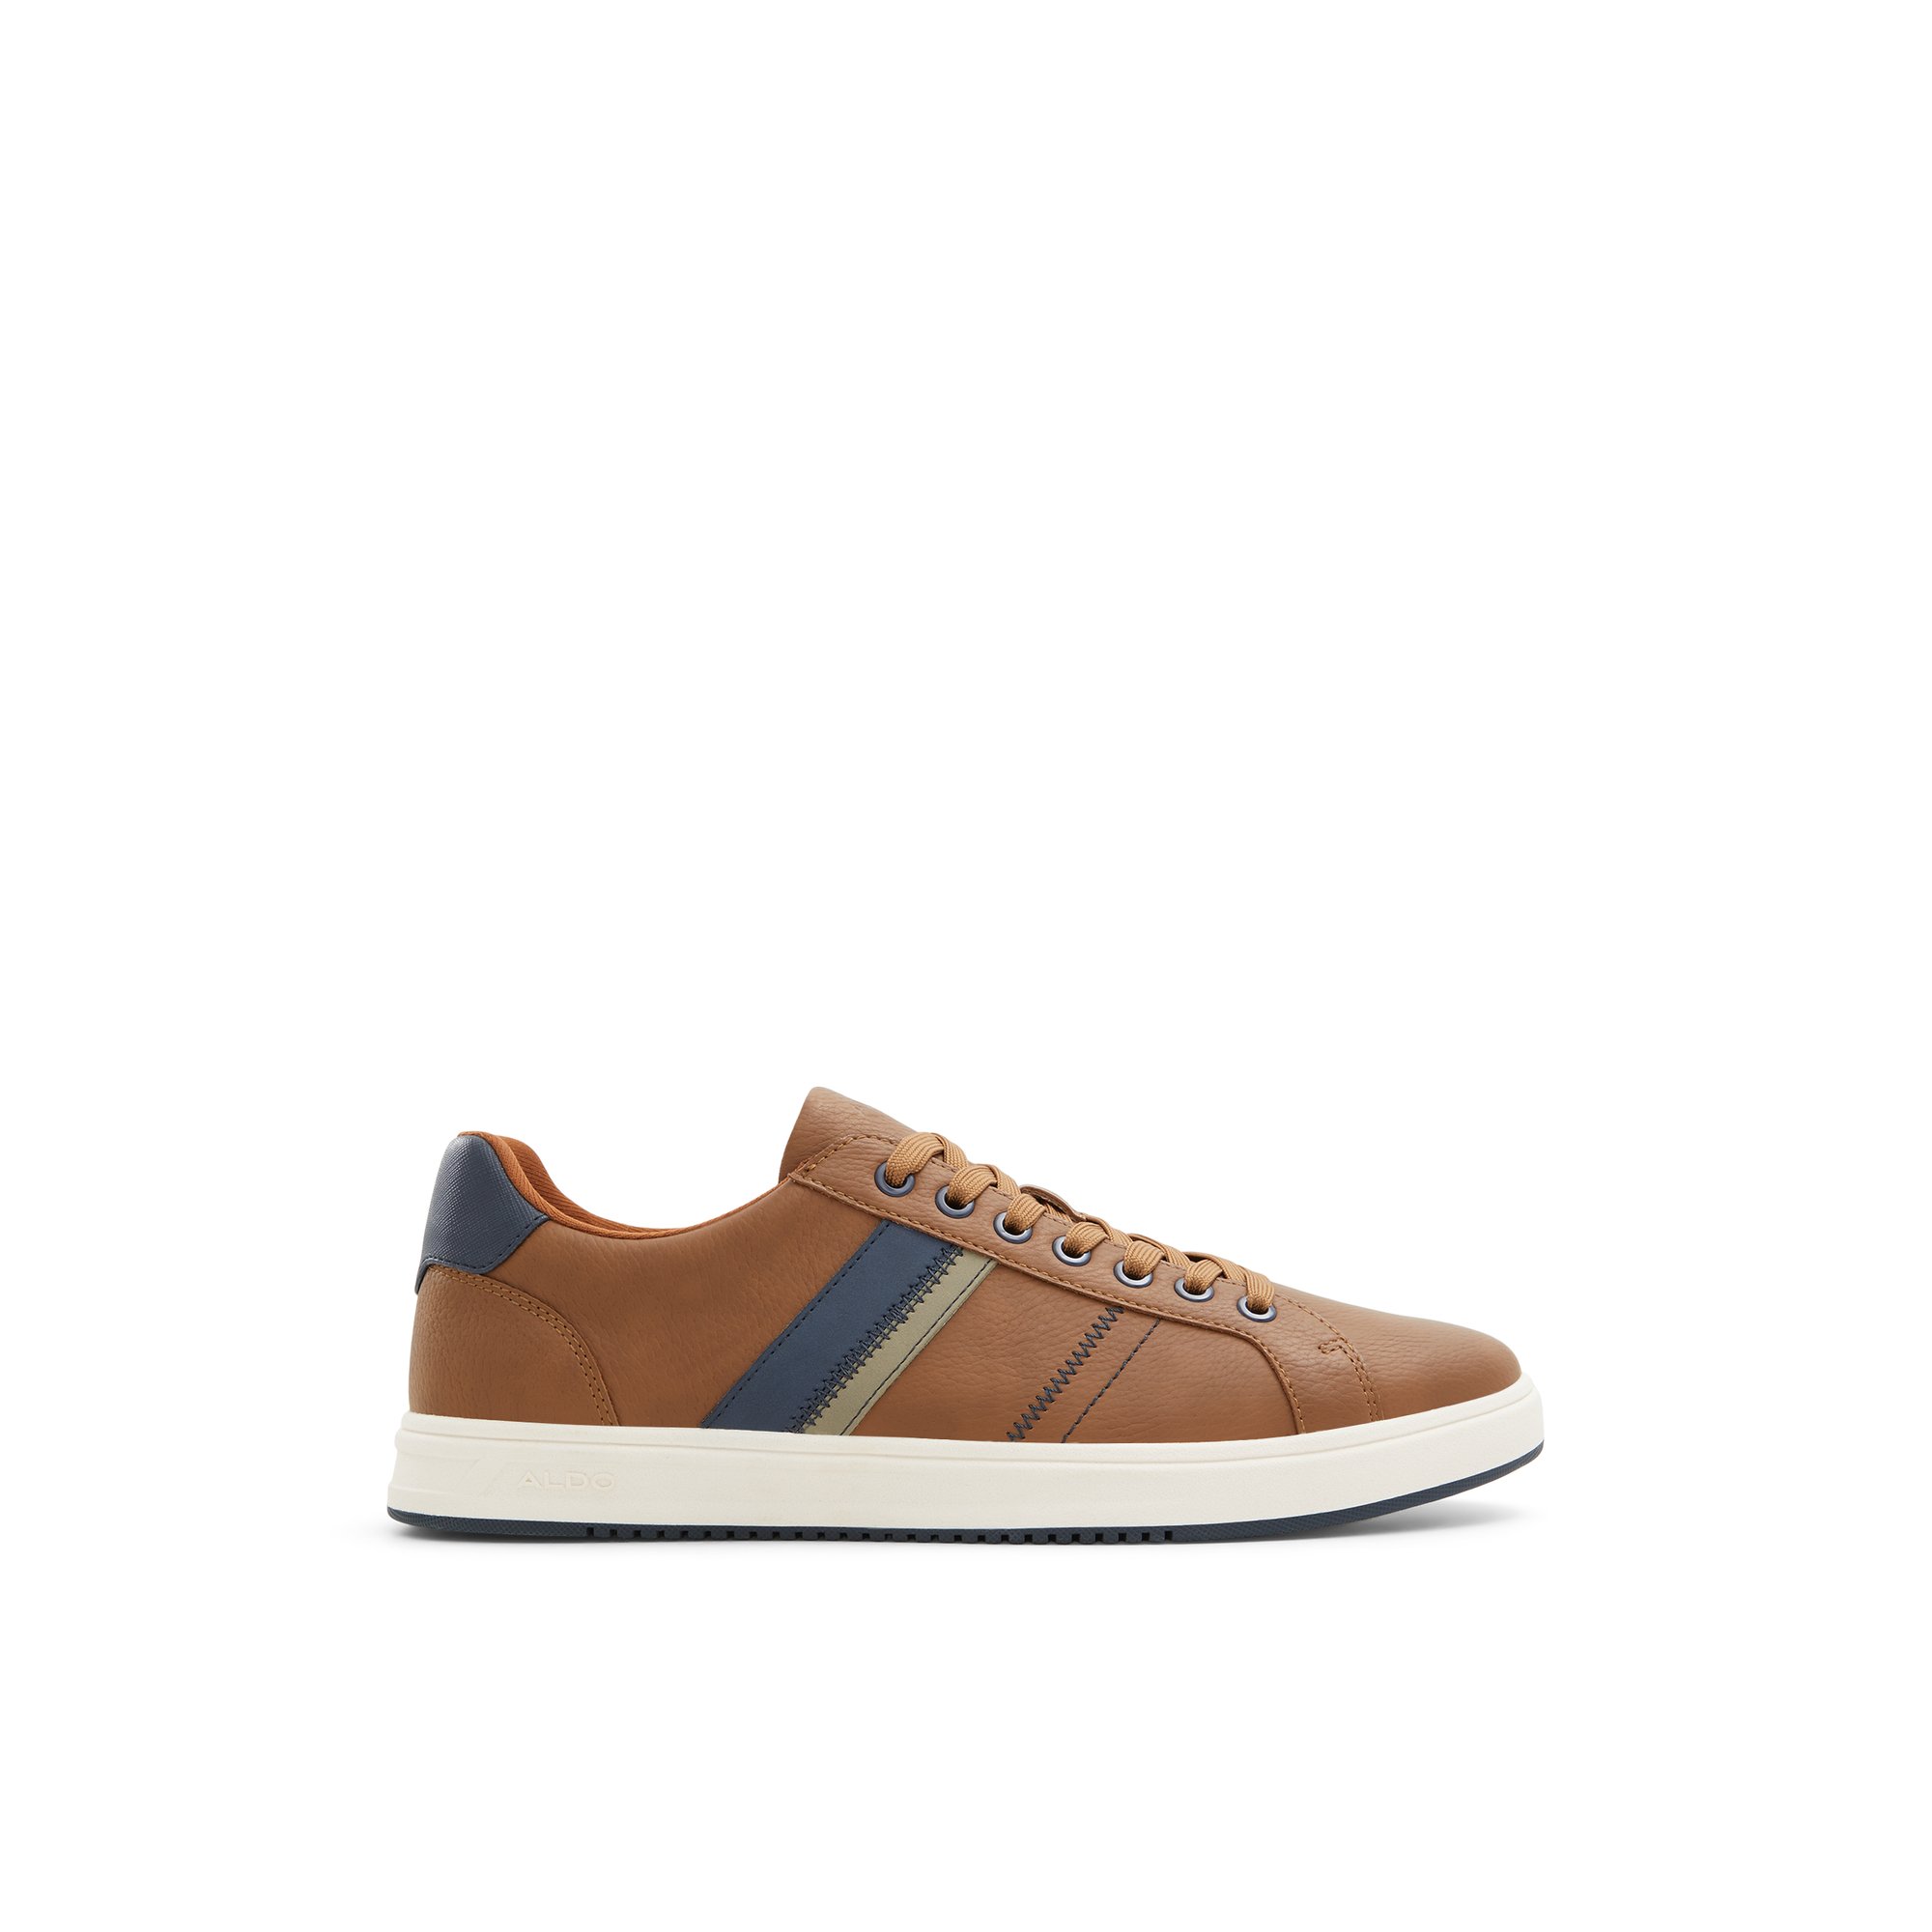 ALDO Citywalk - Men's Low Top Sneakers - Brown